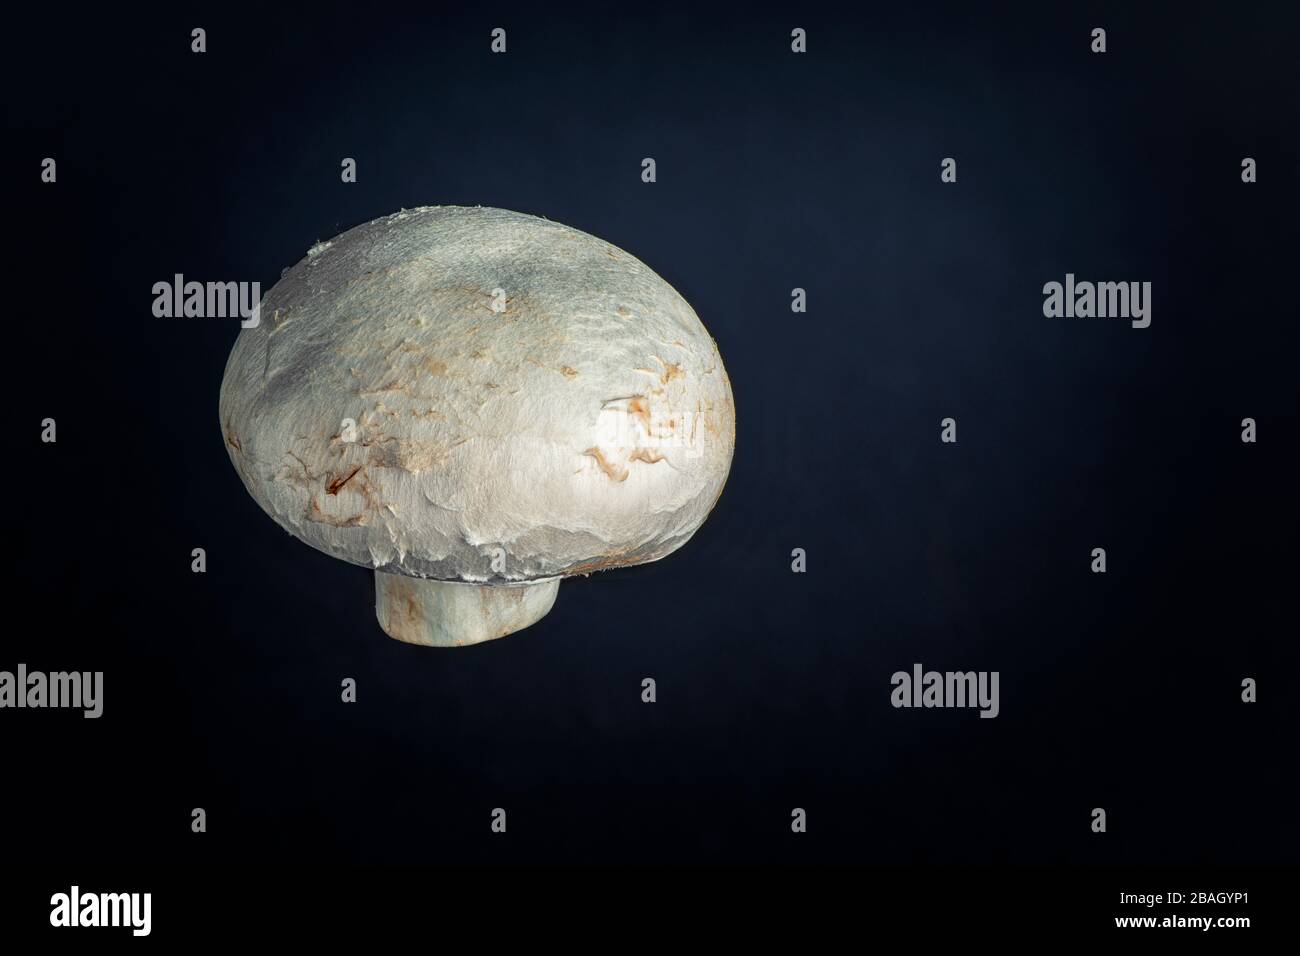 Fresh chestnut mushroom close up on black background Stock Photo